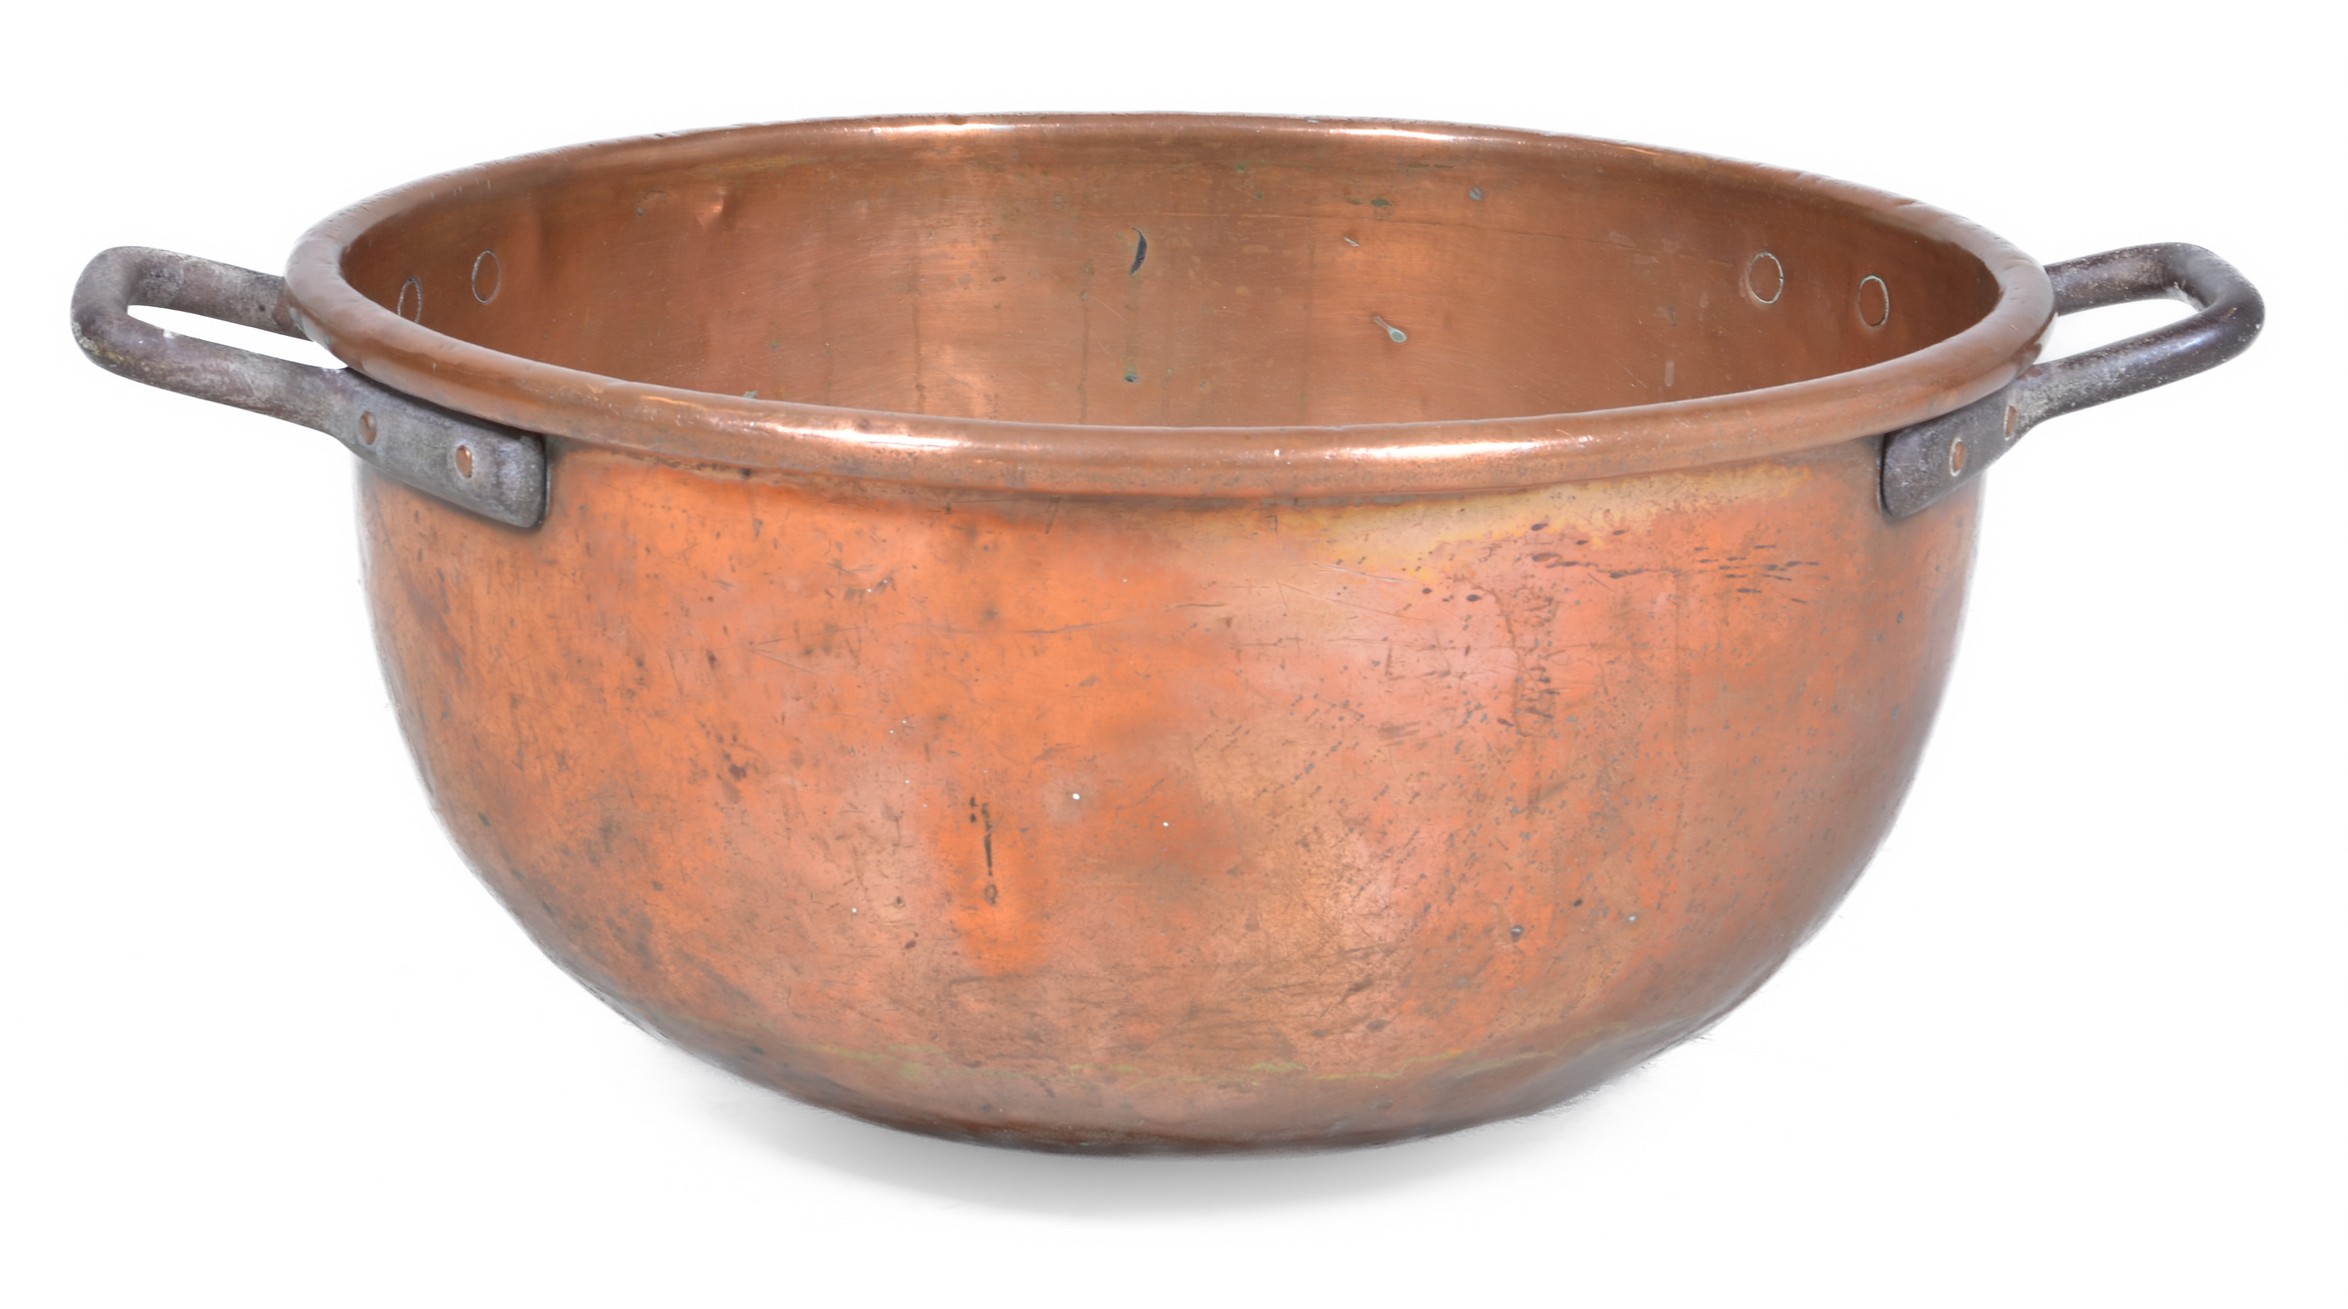 Copper and iron cauldron, 11"h